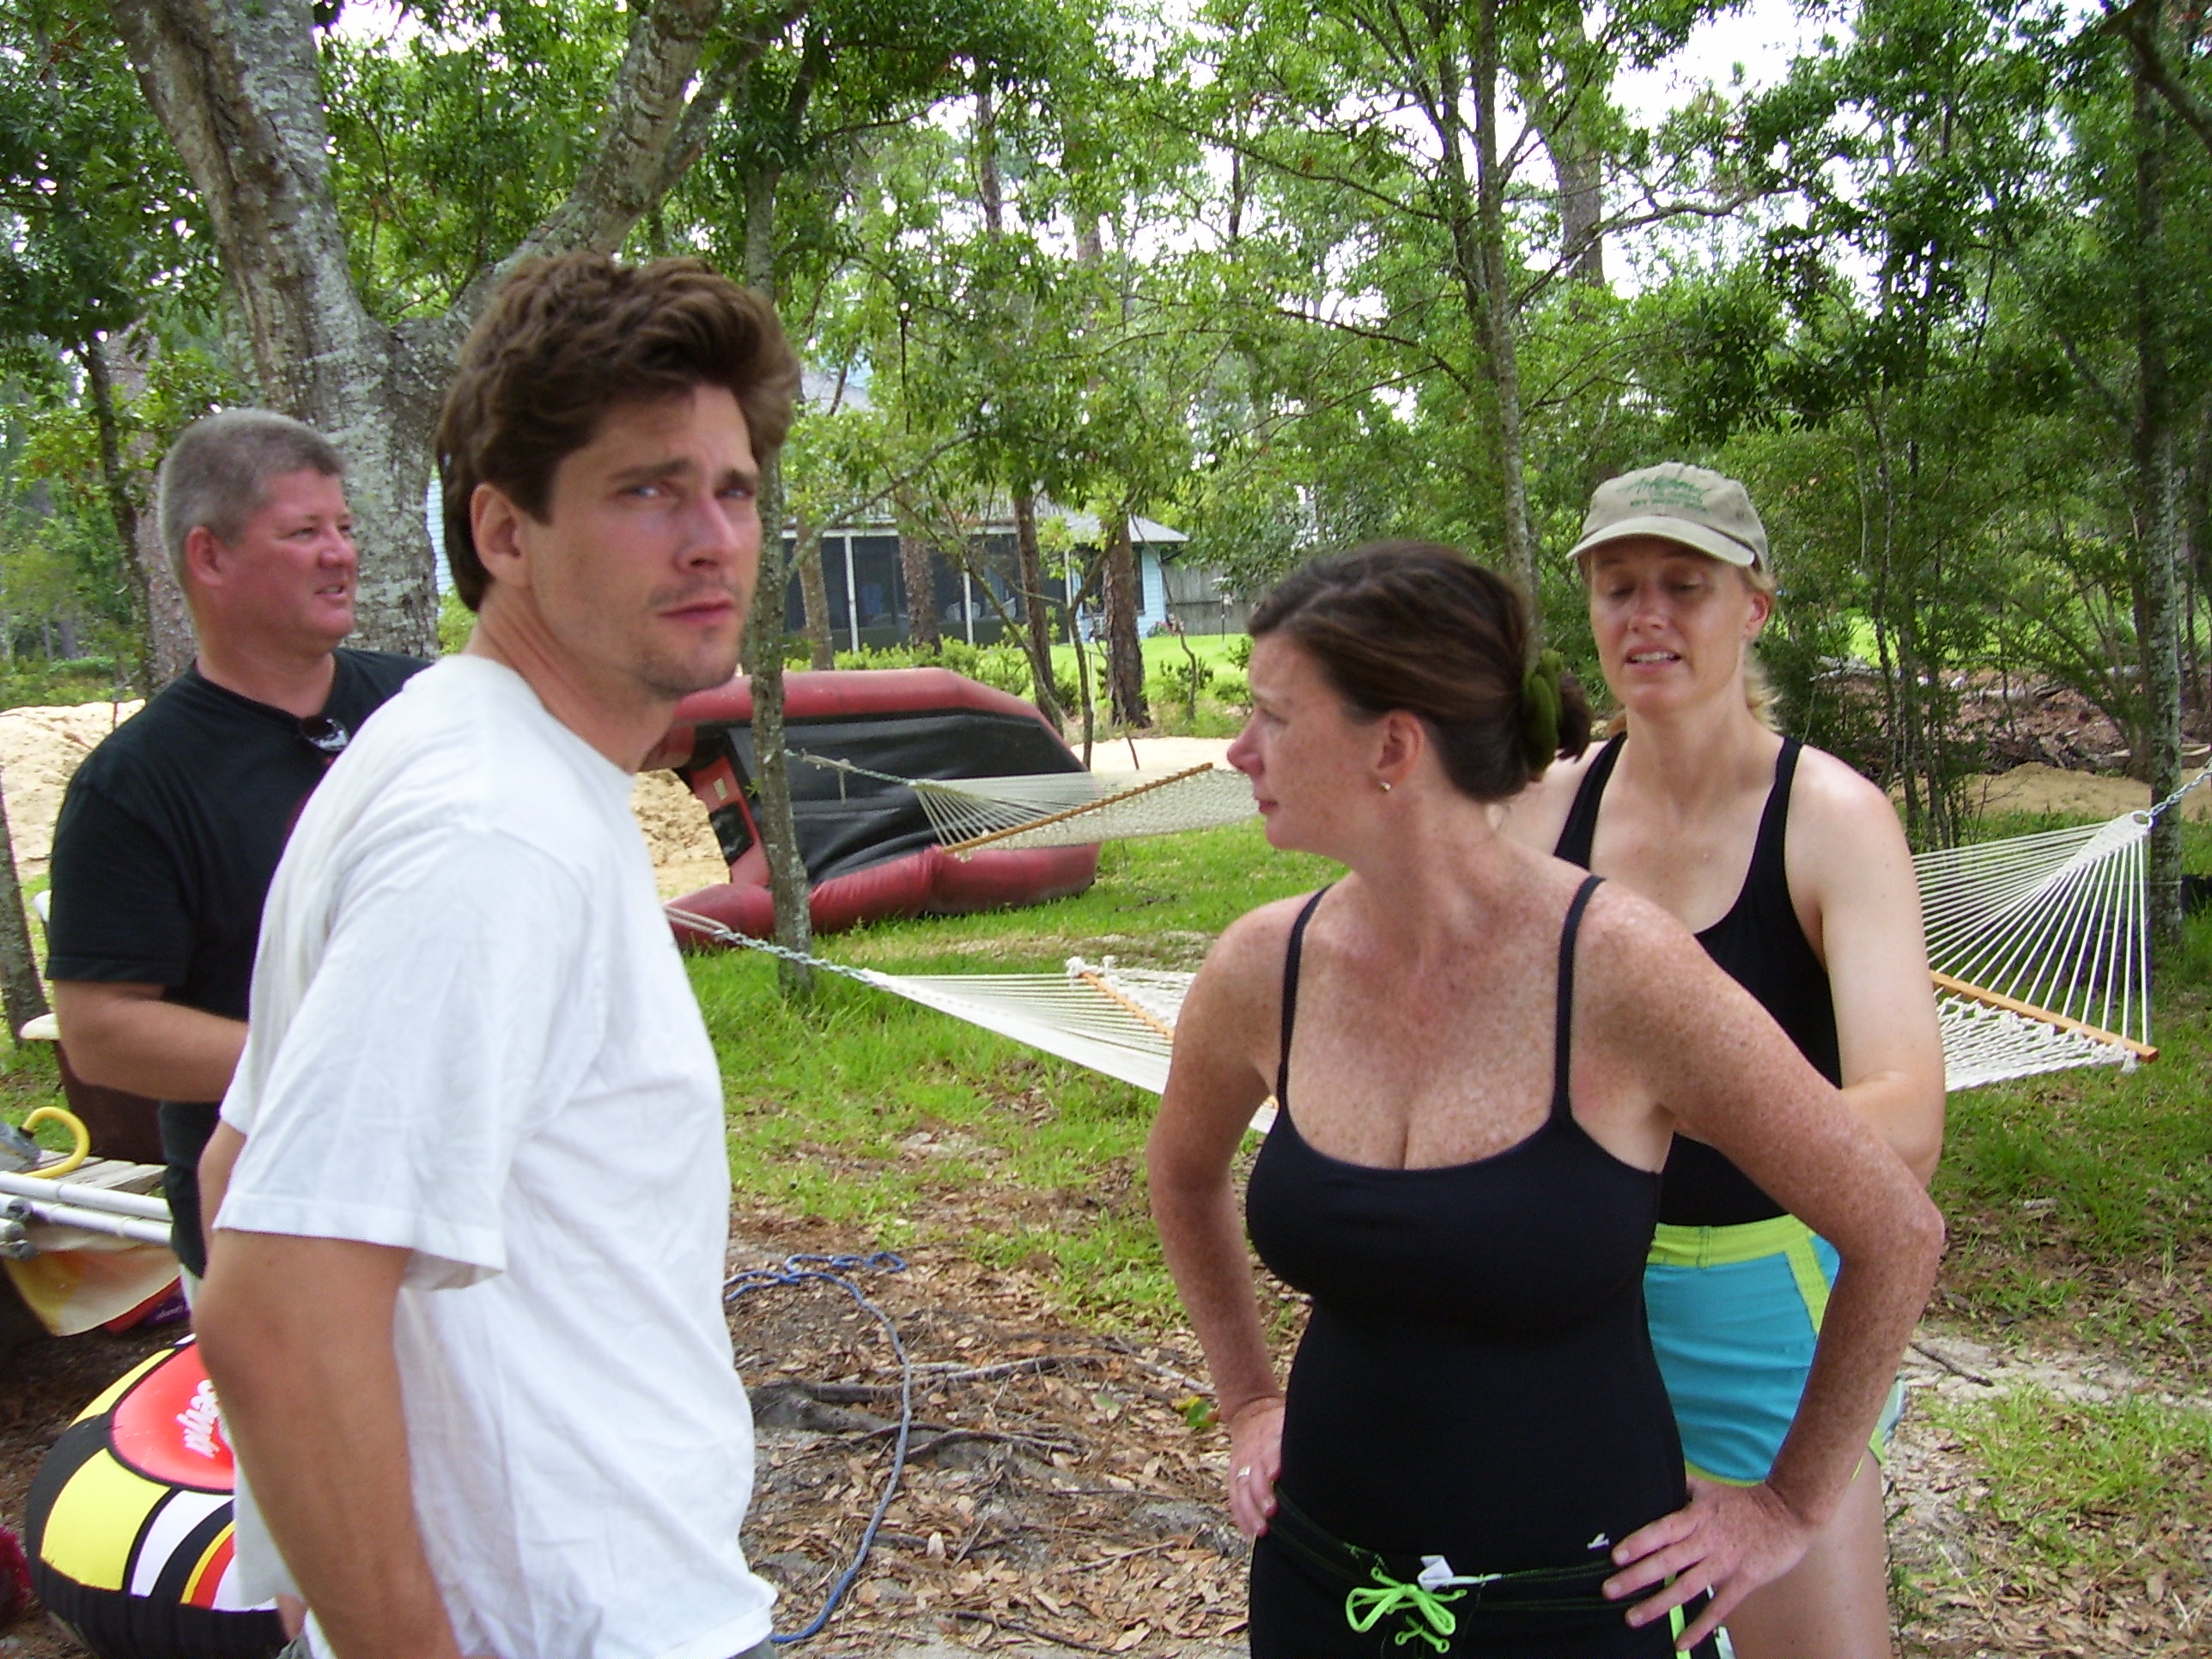 Trey, Dana, and Sis at Pensacola Regatta 2006.